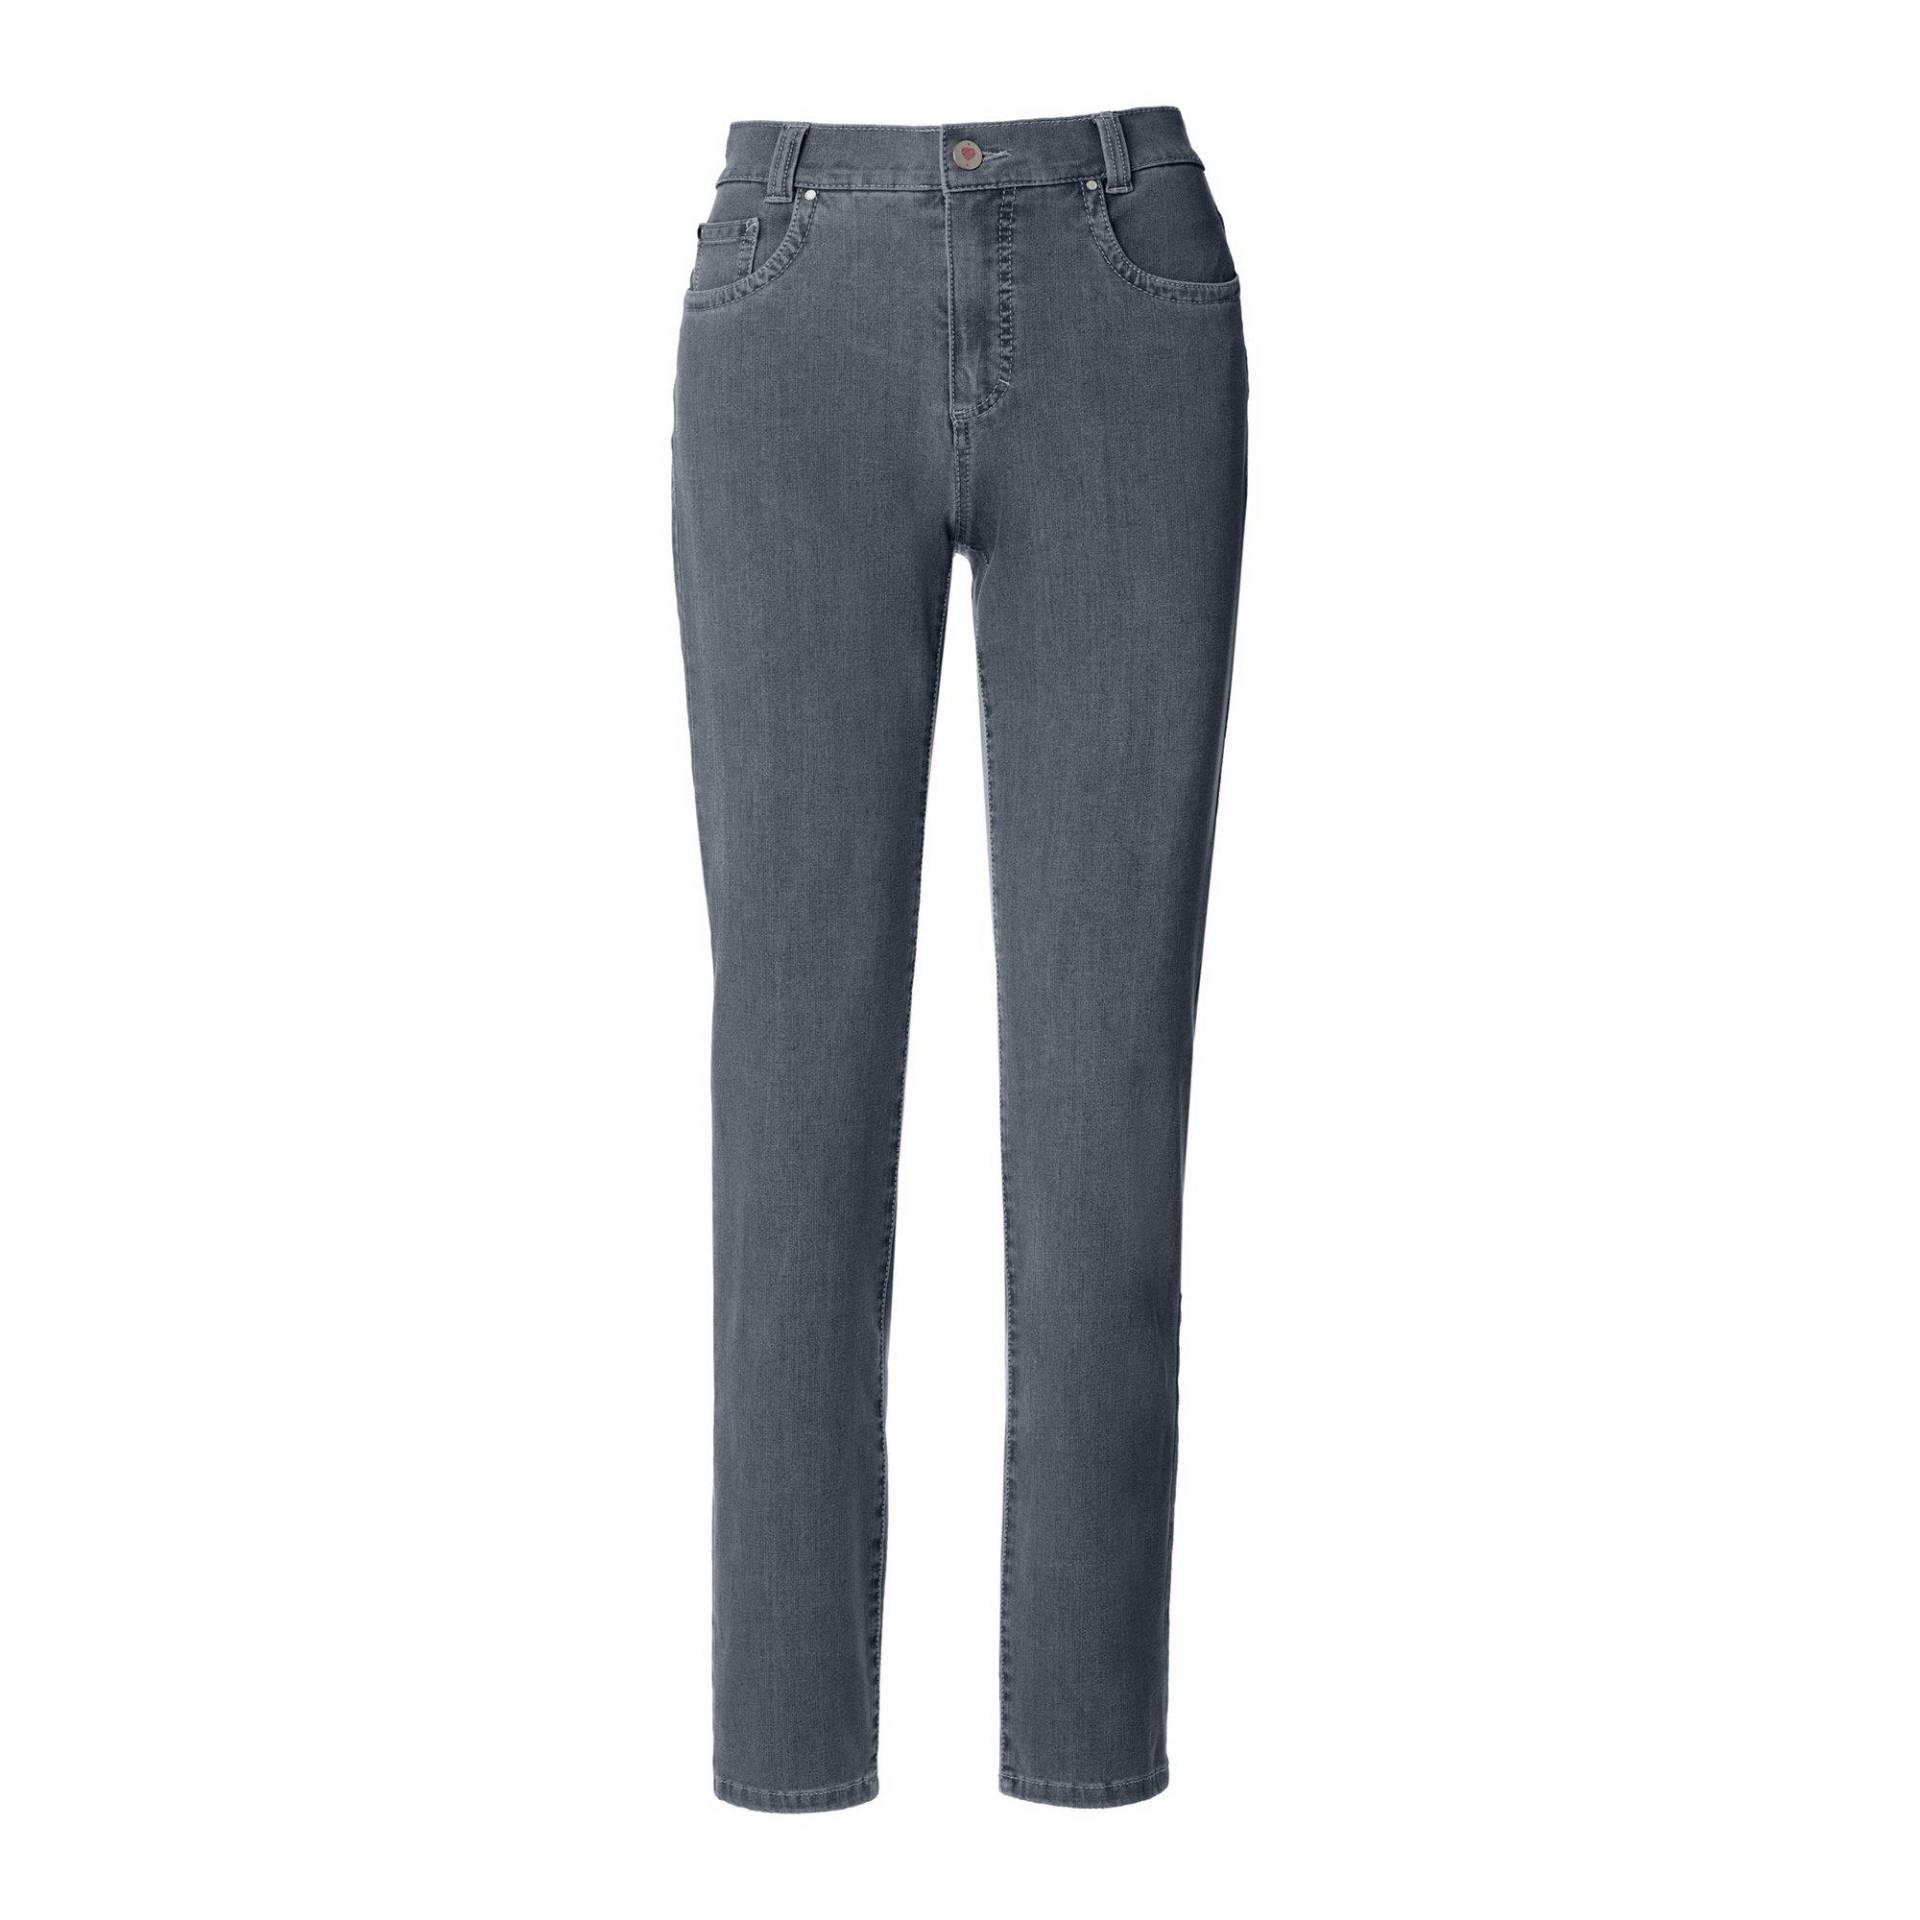 Jeans, Slim Fit Damen Blau Denim Dunkel W36 von ANNA MONTANA